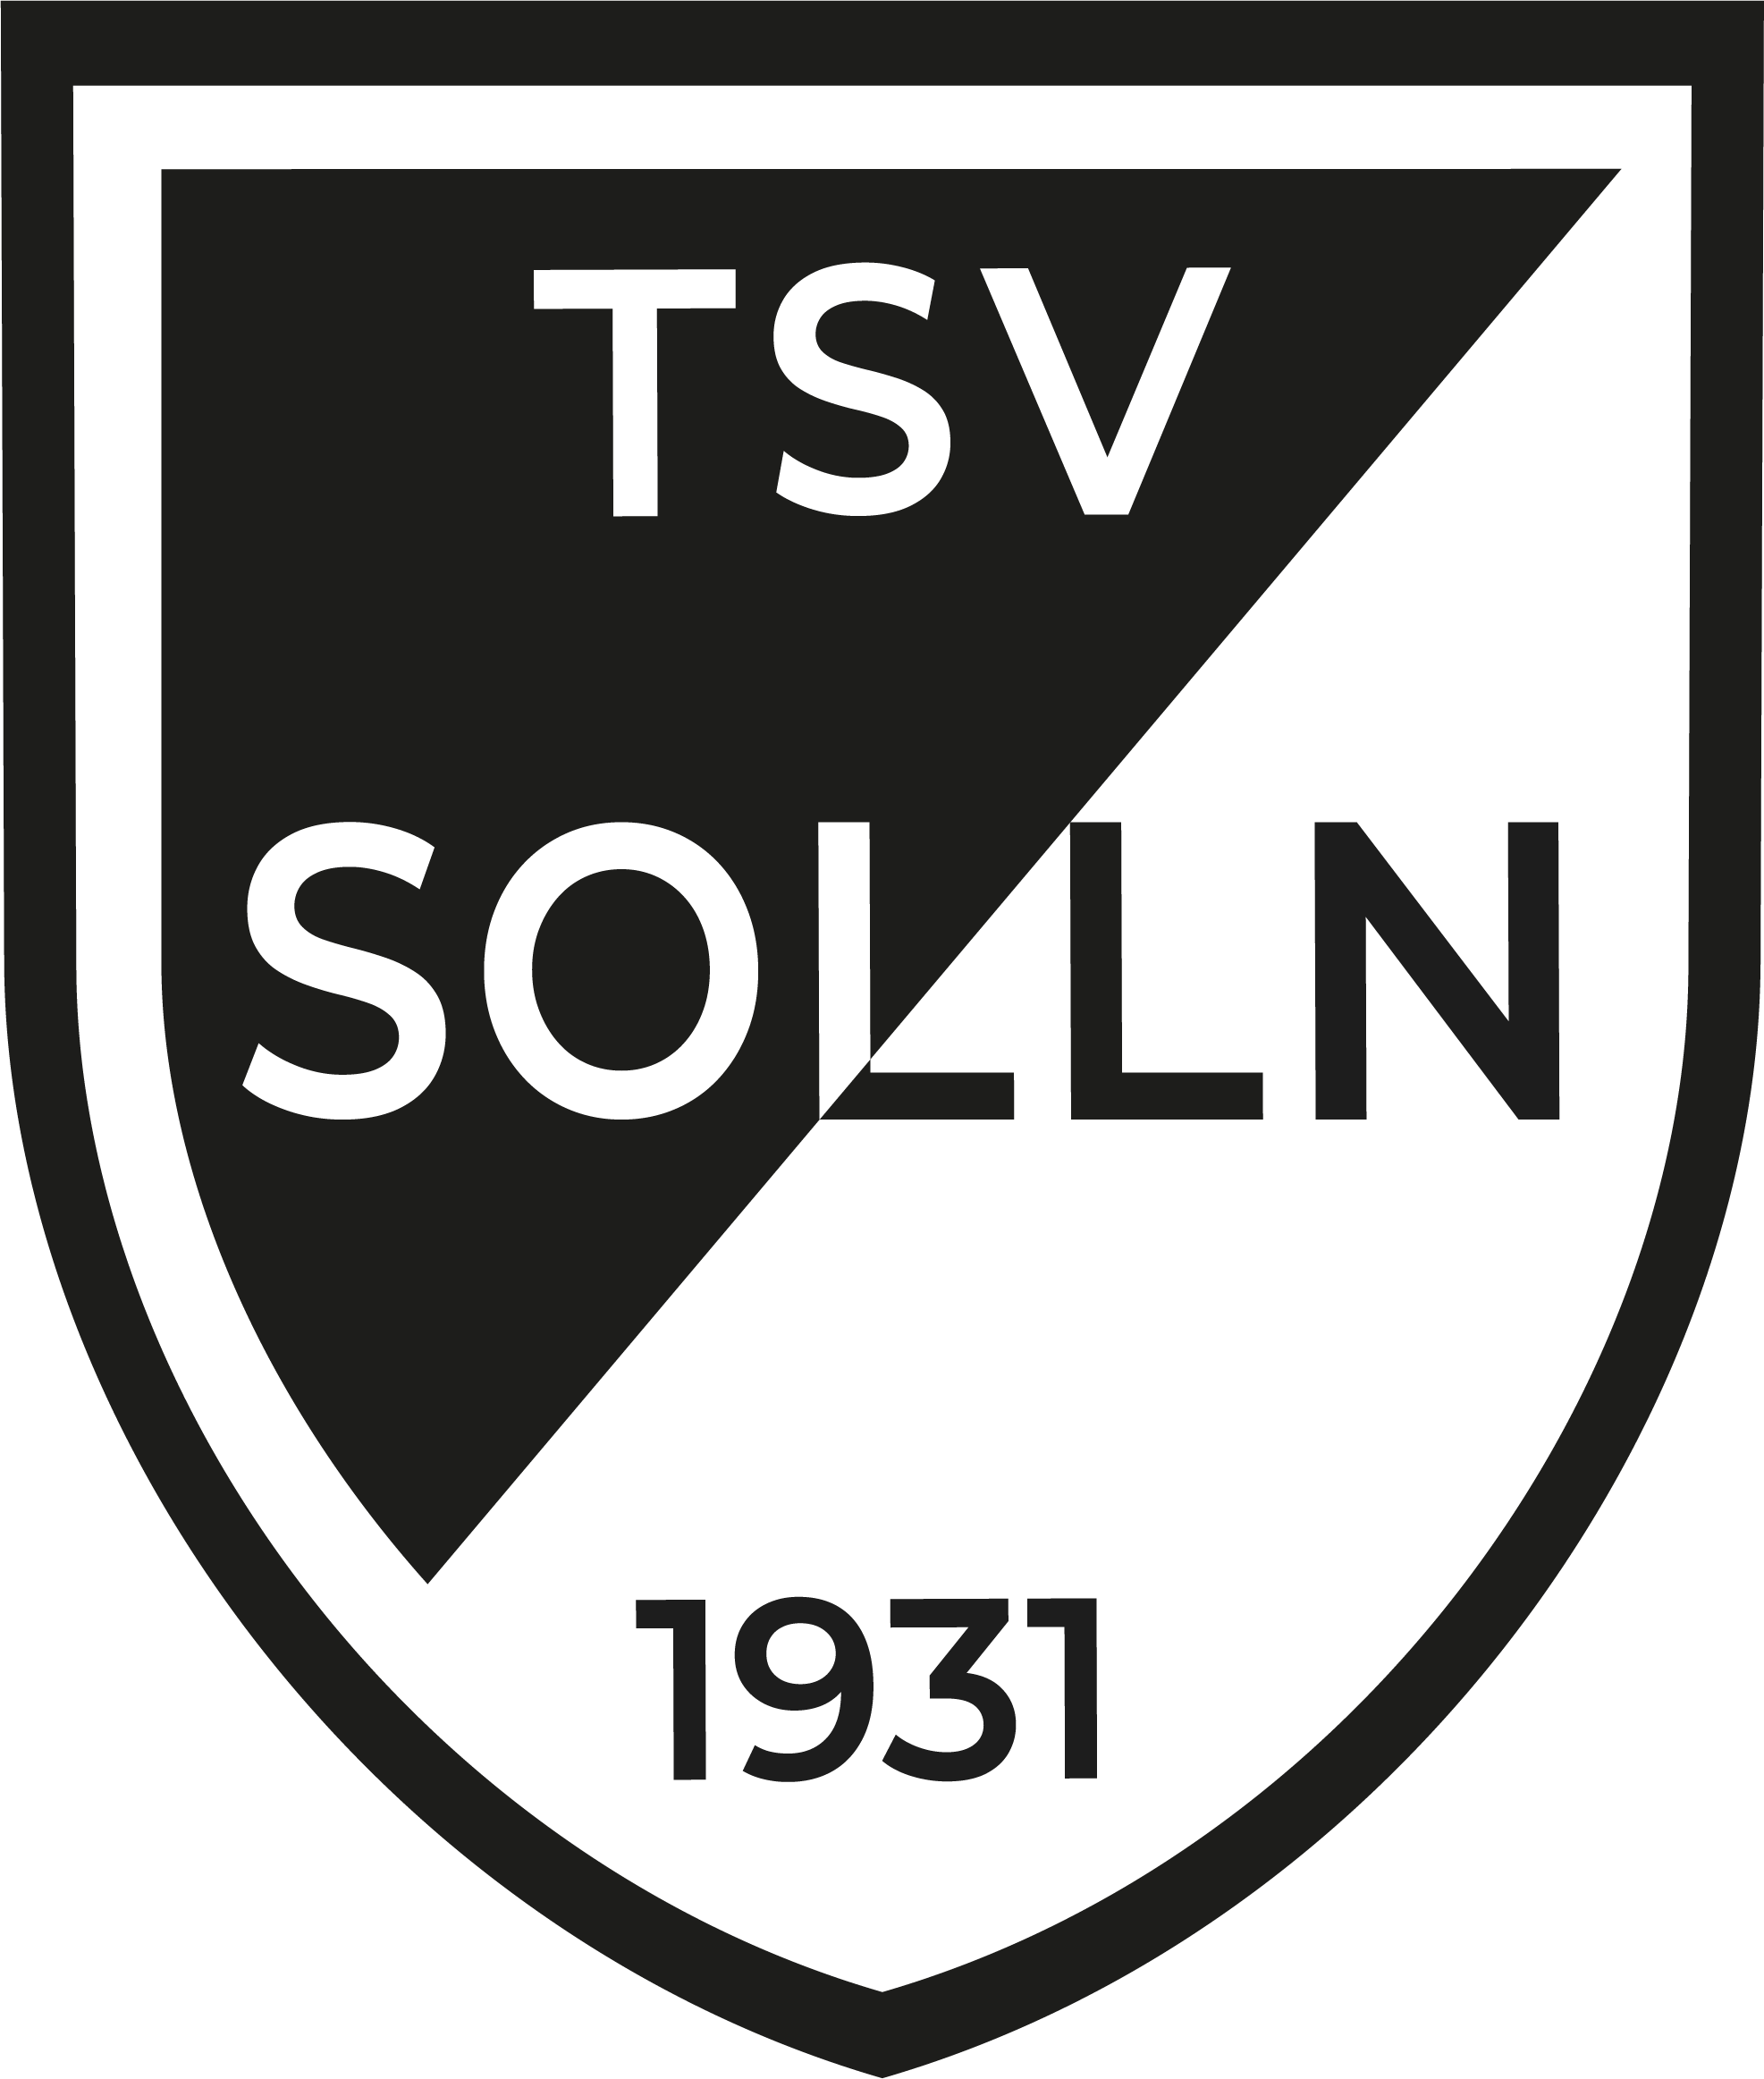 TSV Solln Fussball Equipment Shop Logo